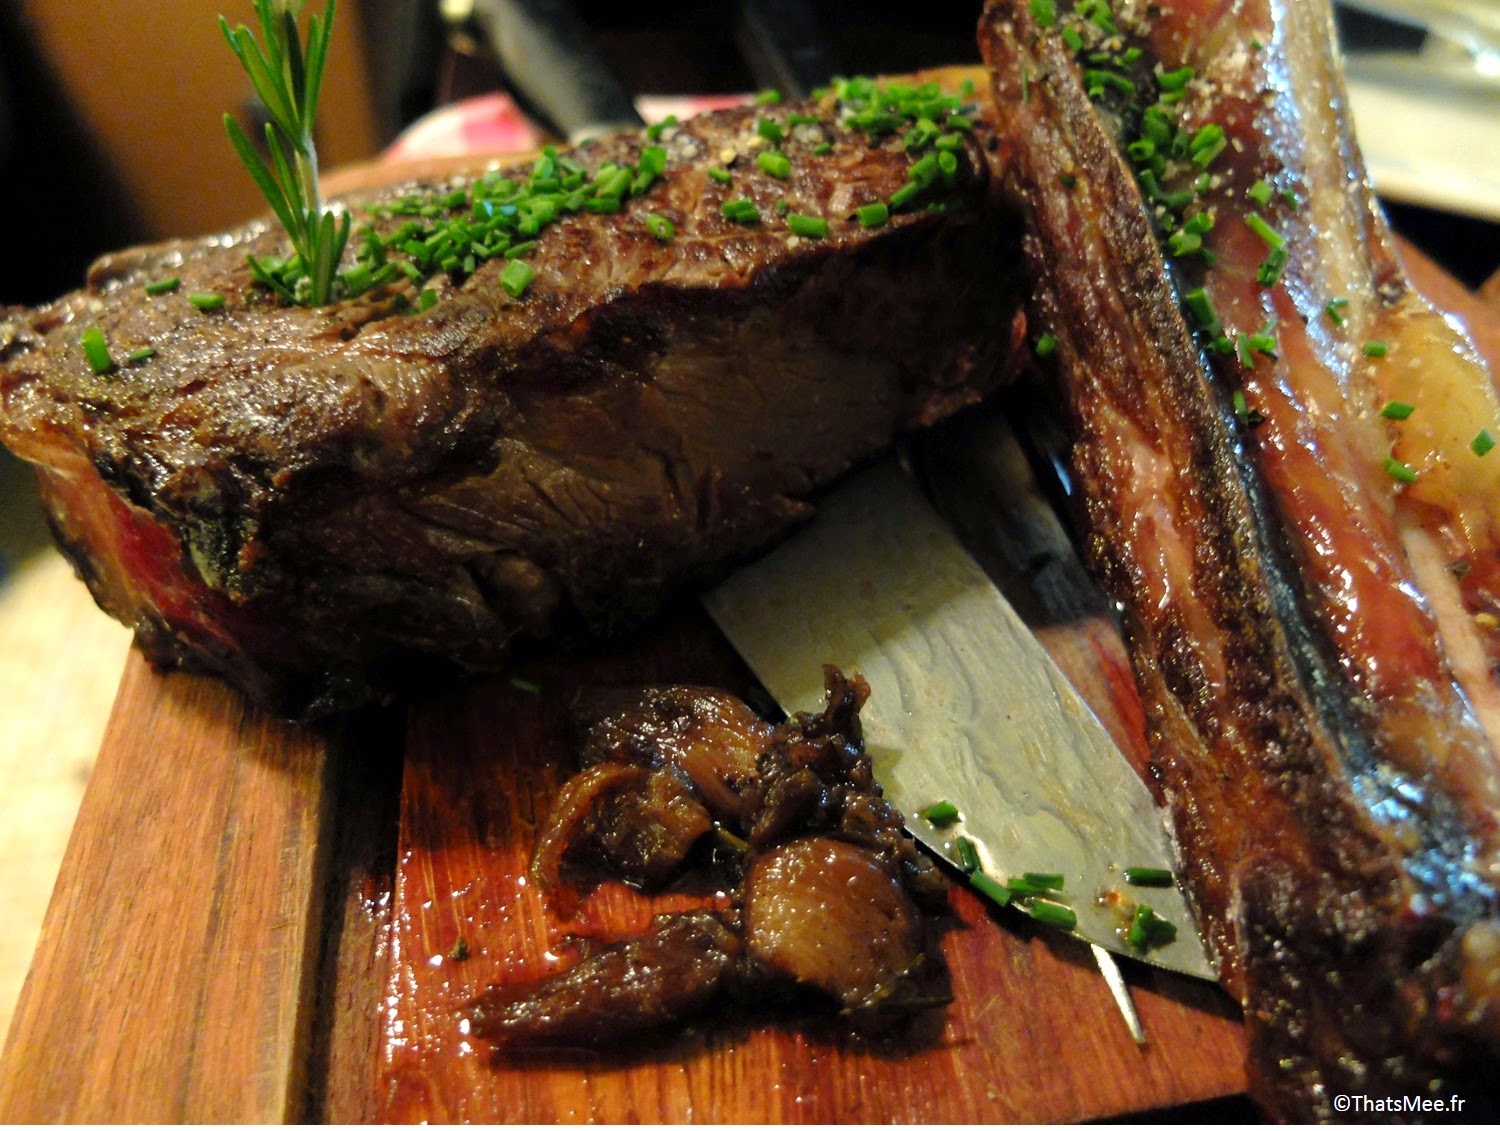 cote de boeuf Restaurant viande carnivore Les Crocs de L'ogre Paris 7 Ecole militaire boucherie viandards thatsmee.fr bonnes adresses